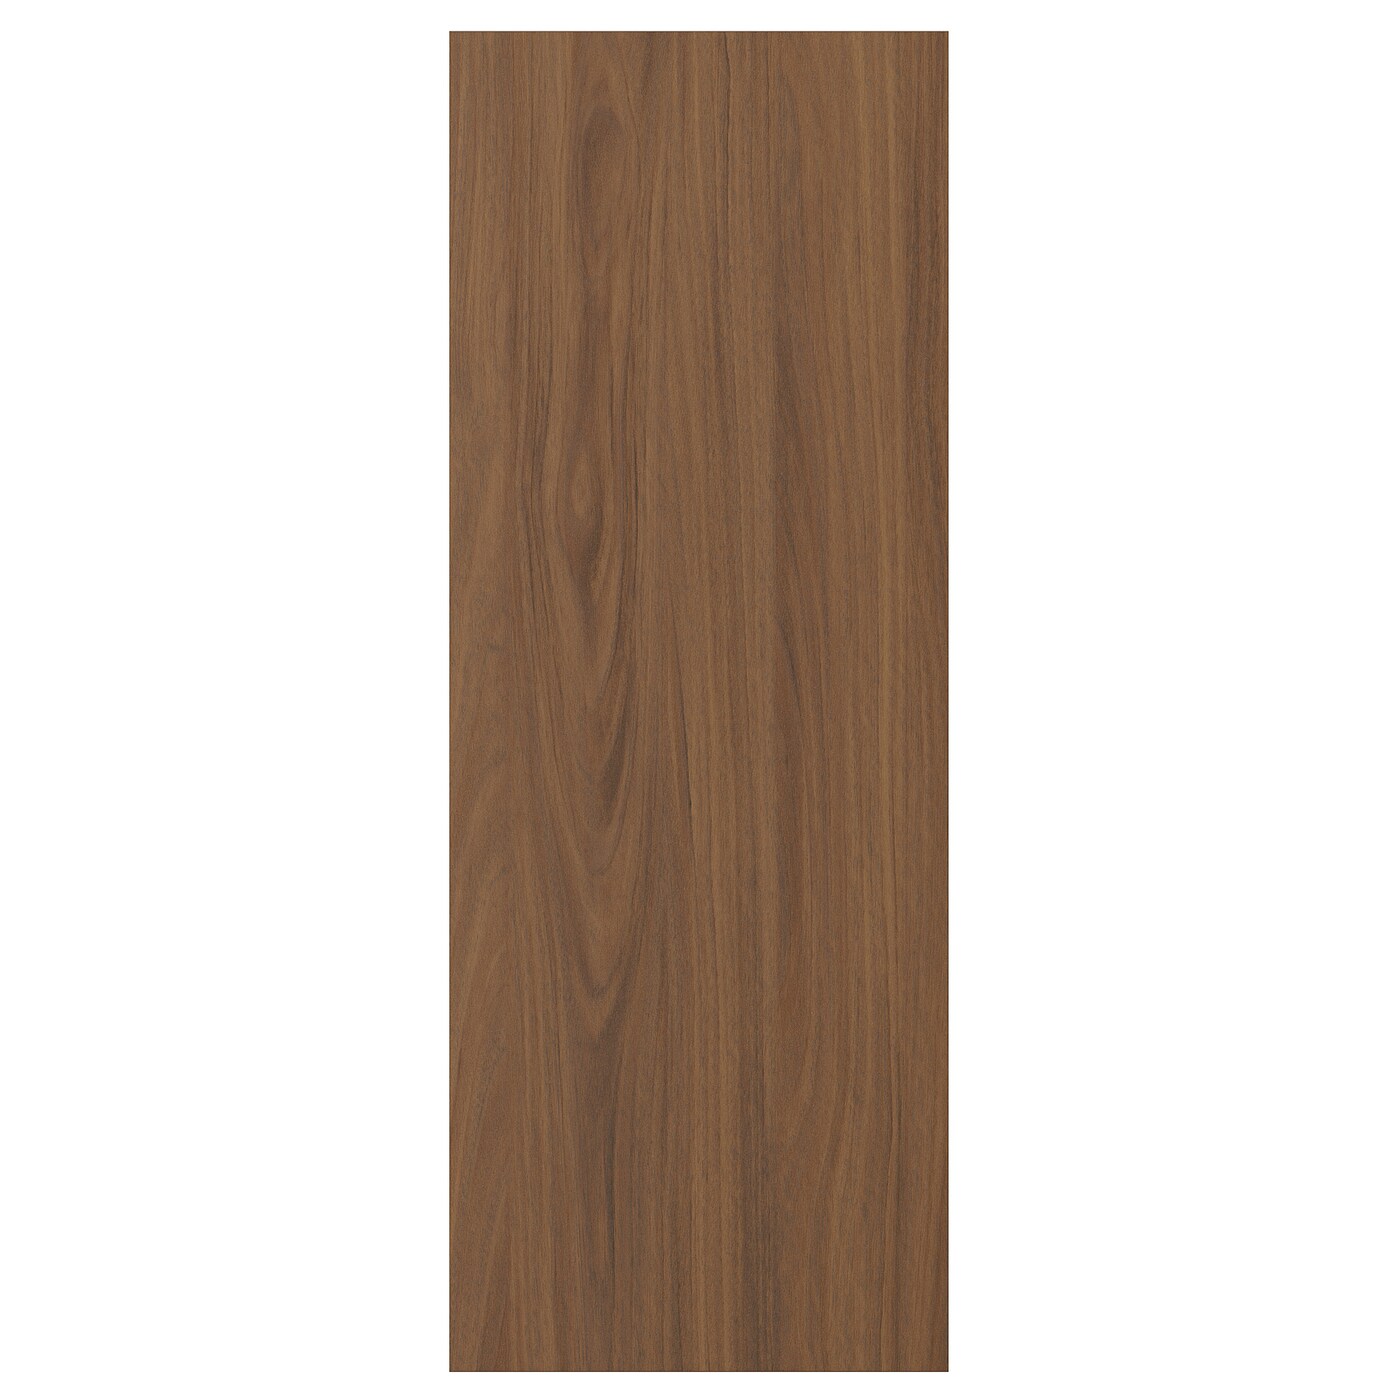 Дверца  - TISTORP IKEA/ ТИСТОРП ИКЕА,  80х30 см, коричневый